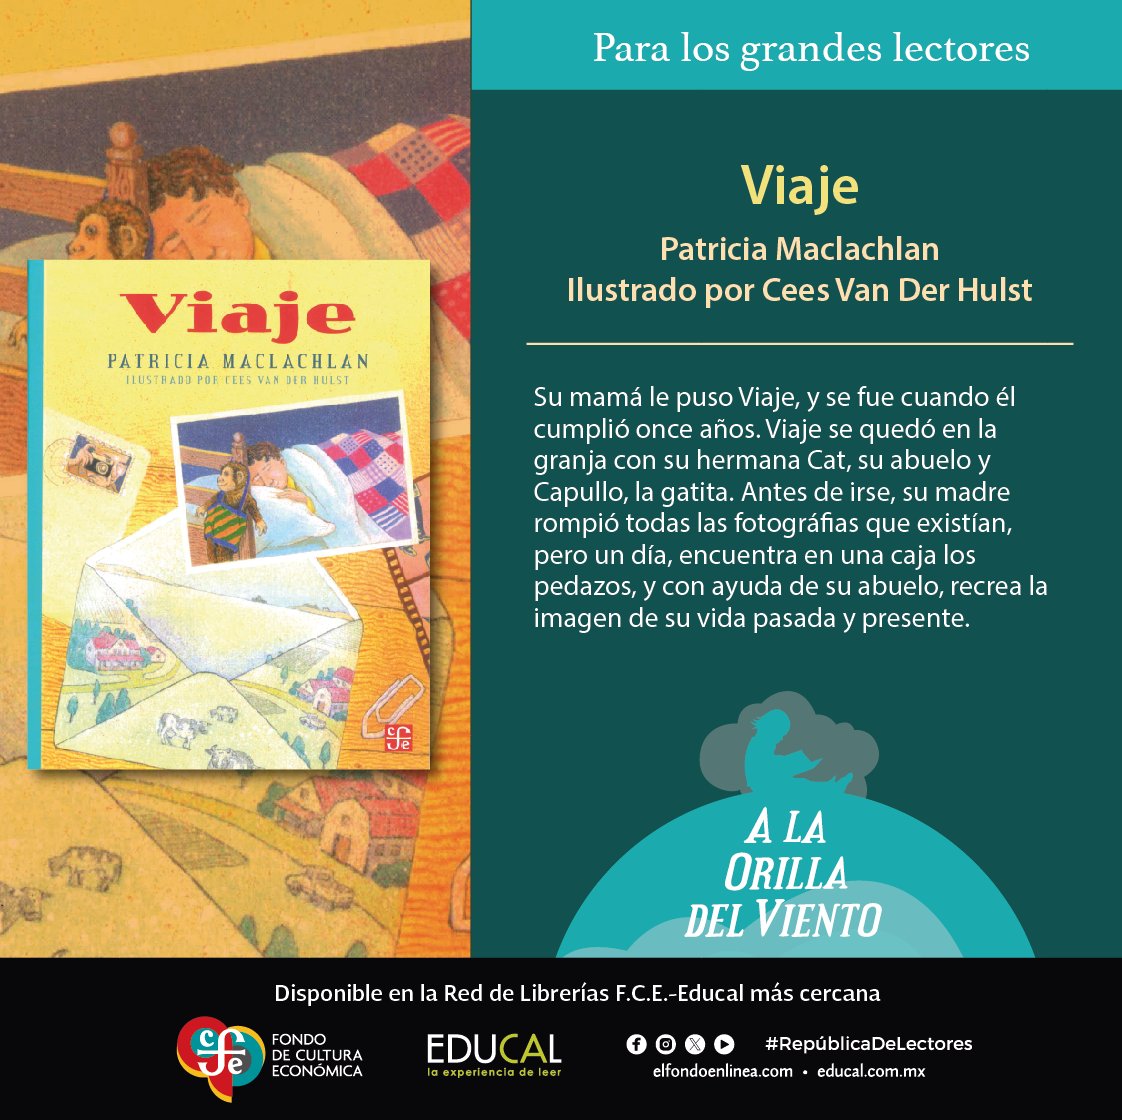 #EducalRecomienda #Viaje de #PatriciaMaclachlan ilustrado por #CeesVanDerHulst.

Disponible en tu librería F.C.E.-Educal.

@FCEMexico
#ALaOrillaDelViento #ParaLosGrandesLectores #Infantil #Juvenil #Reimpresión #RepúblicaDeLectores